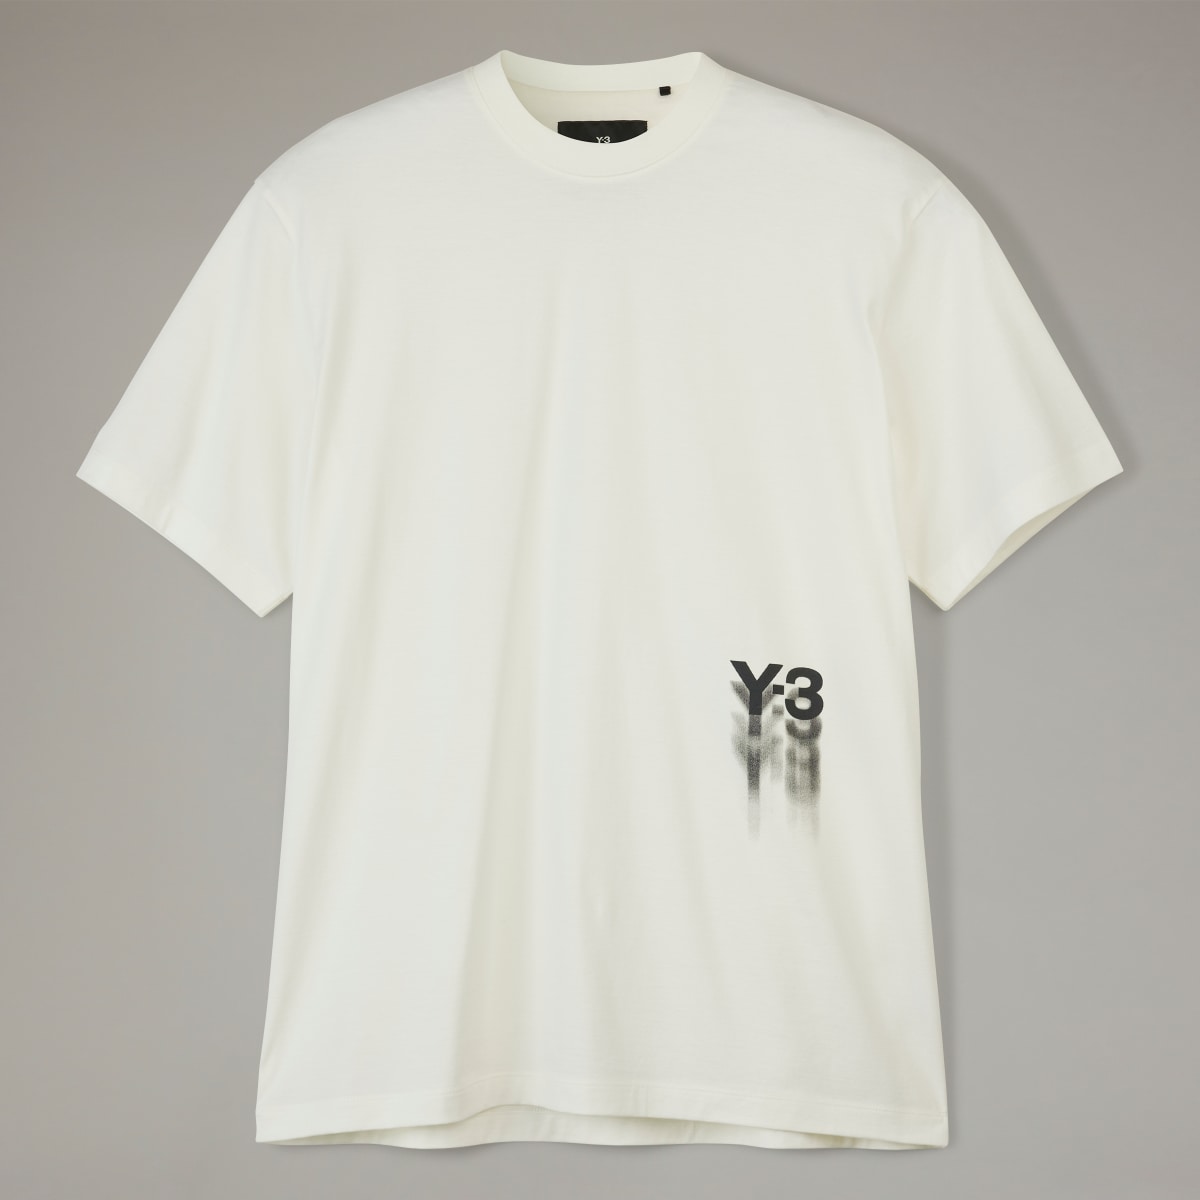 Adidas T-shirt Y-3. 5